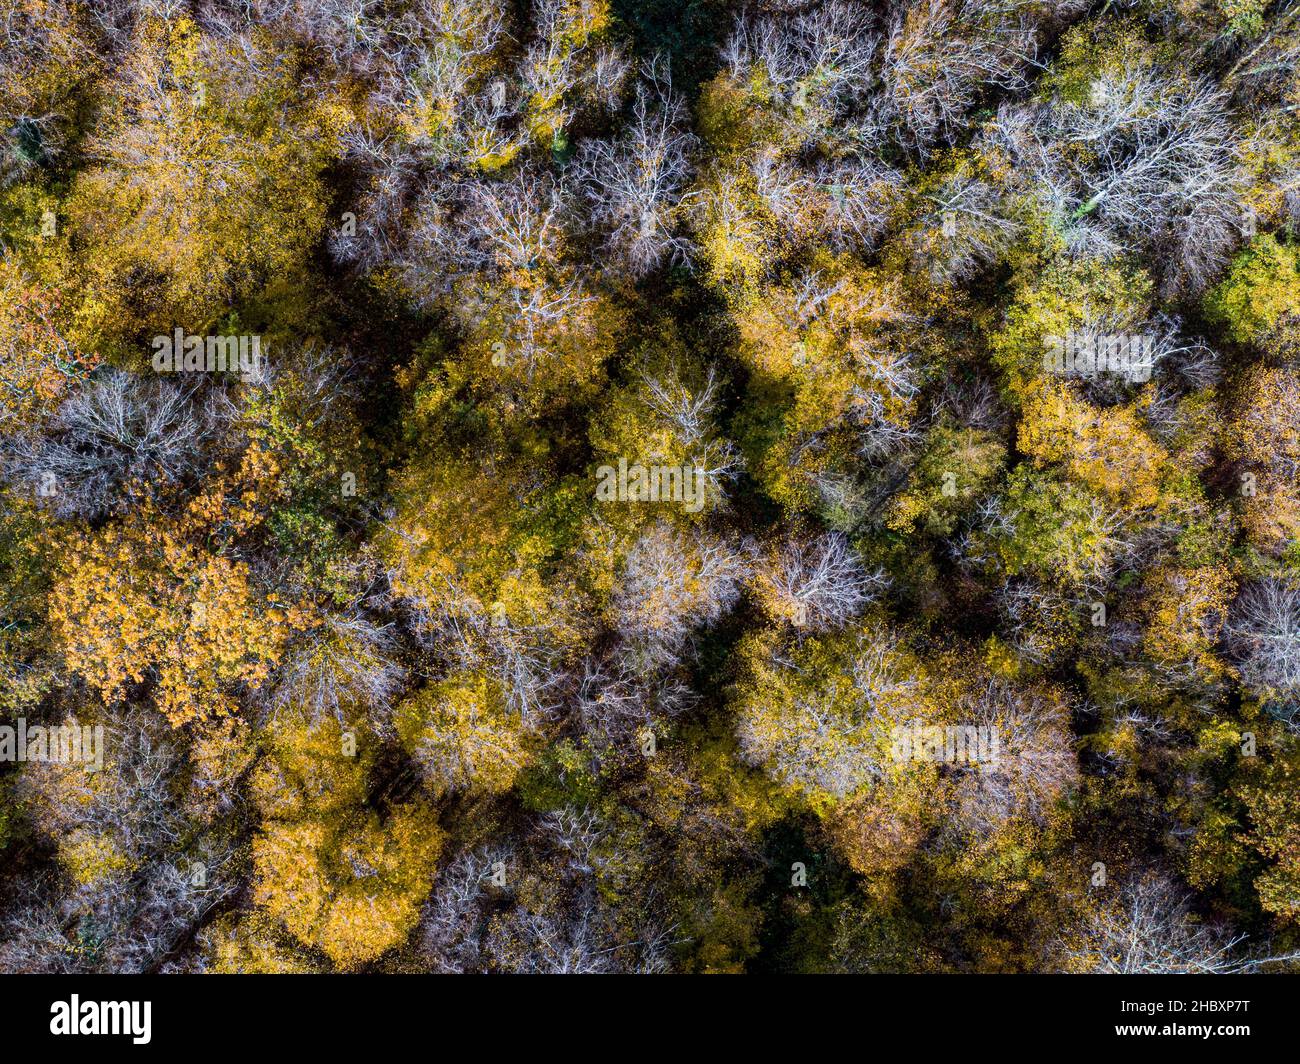 Vista aérea de la parte superior del bosque caducifolio de otoño, fondo amarillo y colorido Foto de stock